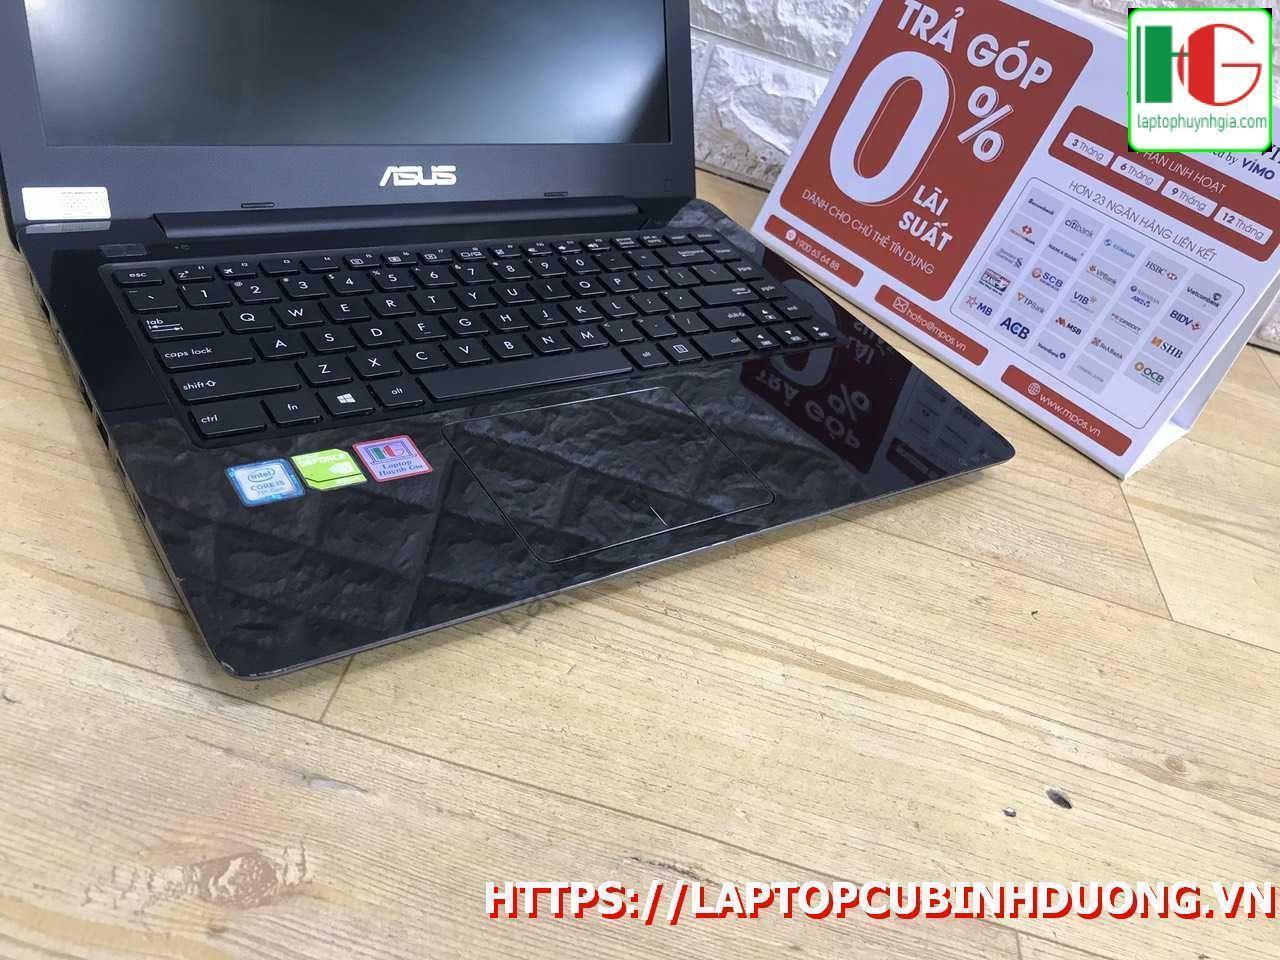 Laptop Asus X456 I5 7200u 4g Ssd 128g Nvidia Gt930mx Laptopcubinhduong.vn 3 [kích Thước Gốc] Result